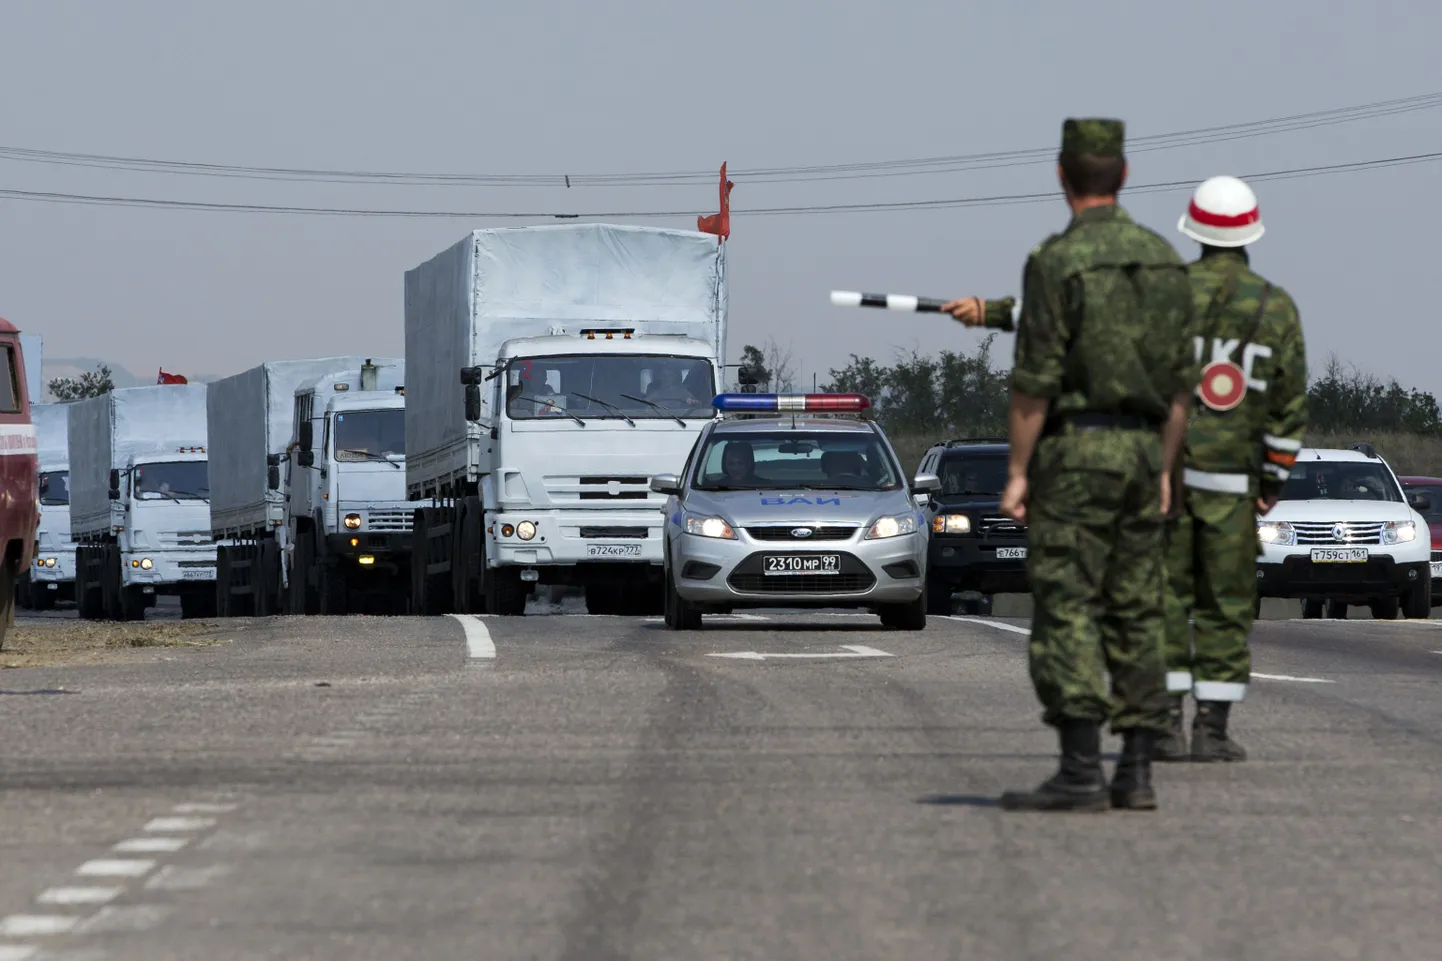 Vene nö humanitaarabikolonn 28 kilomeetri kaugusel Ukraina piirist.